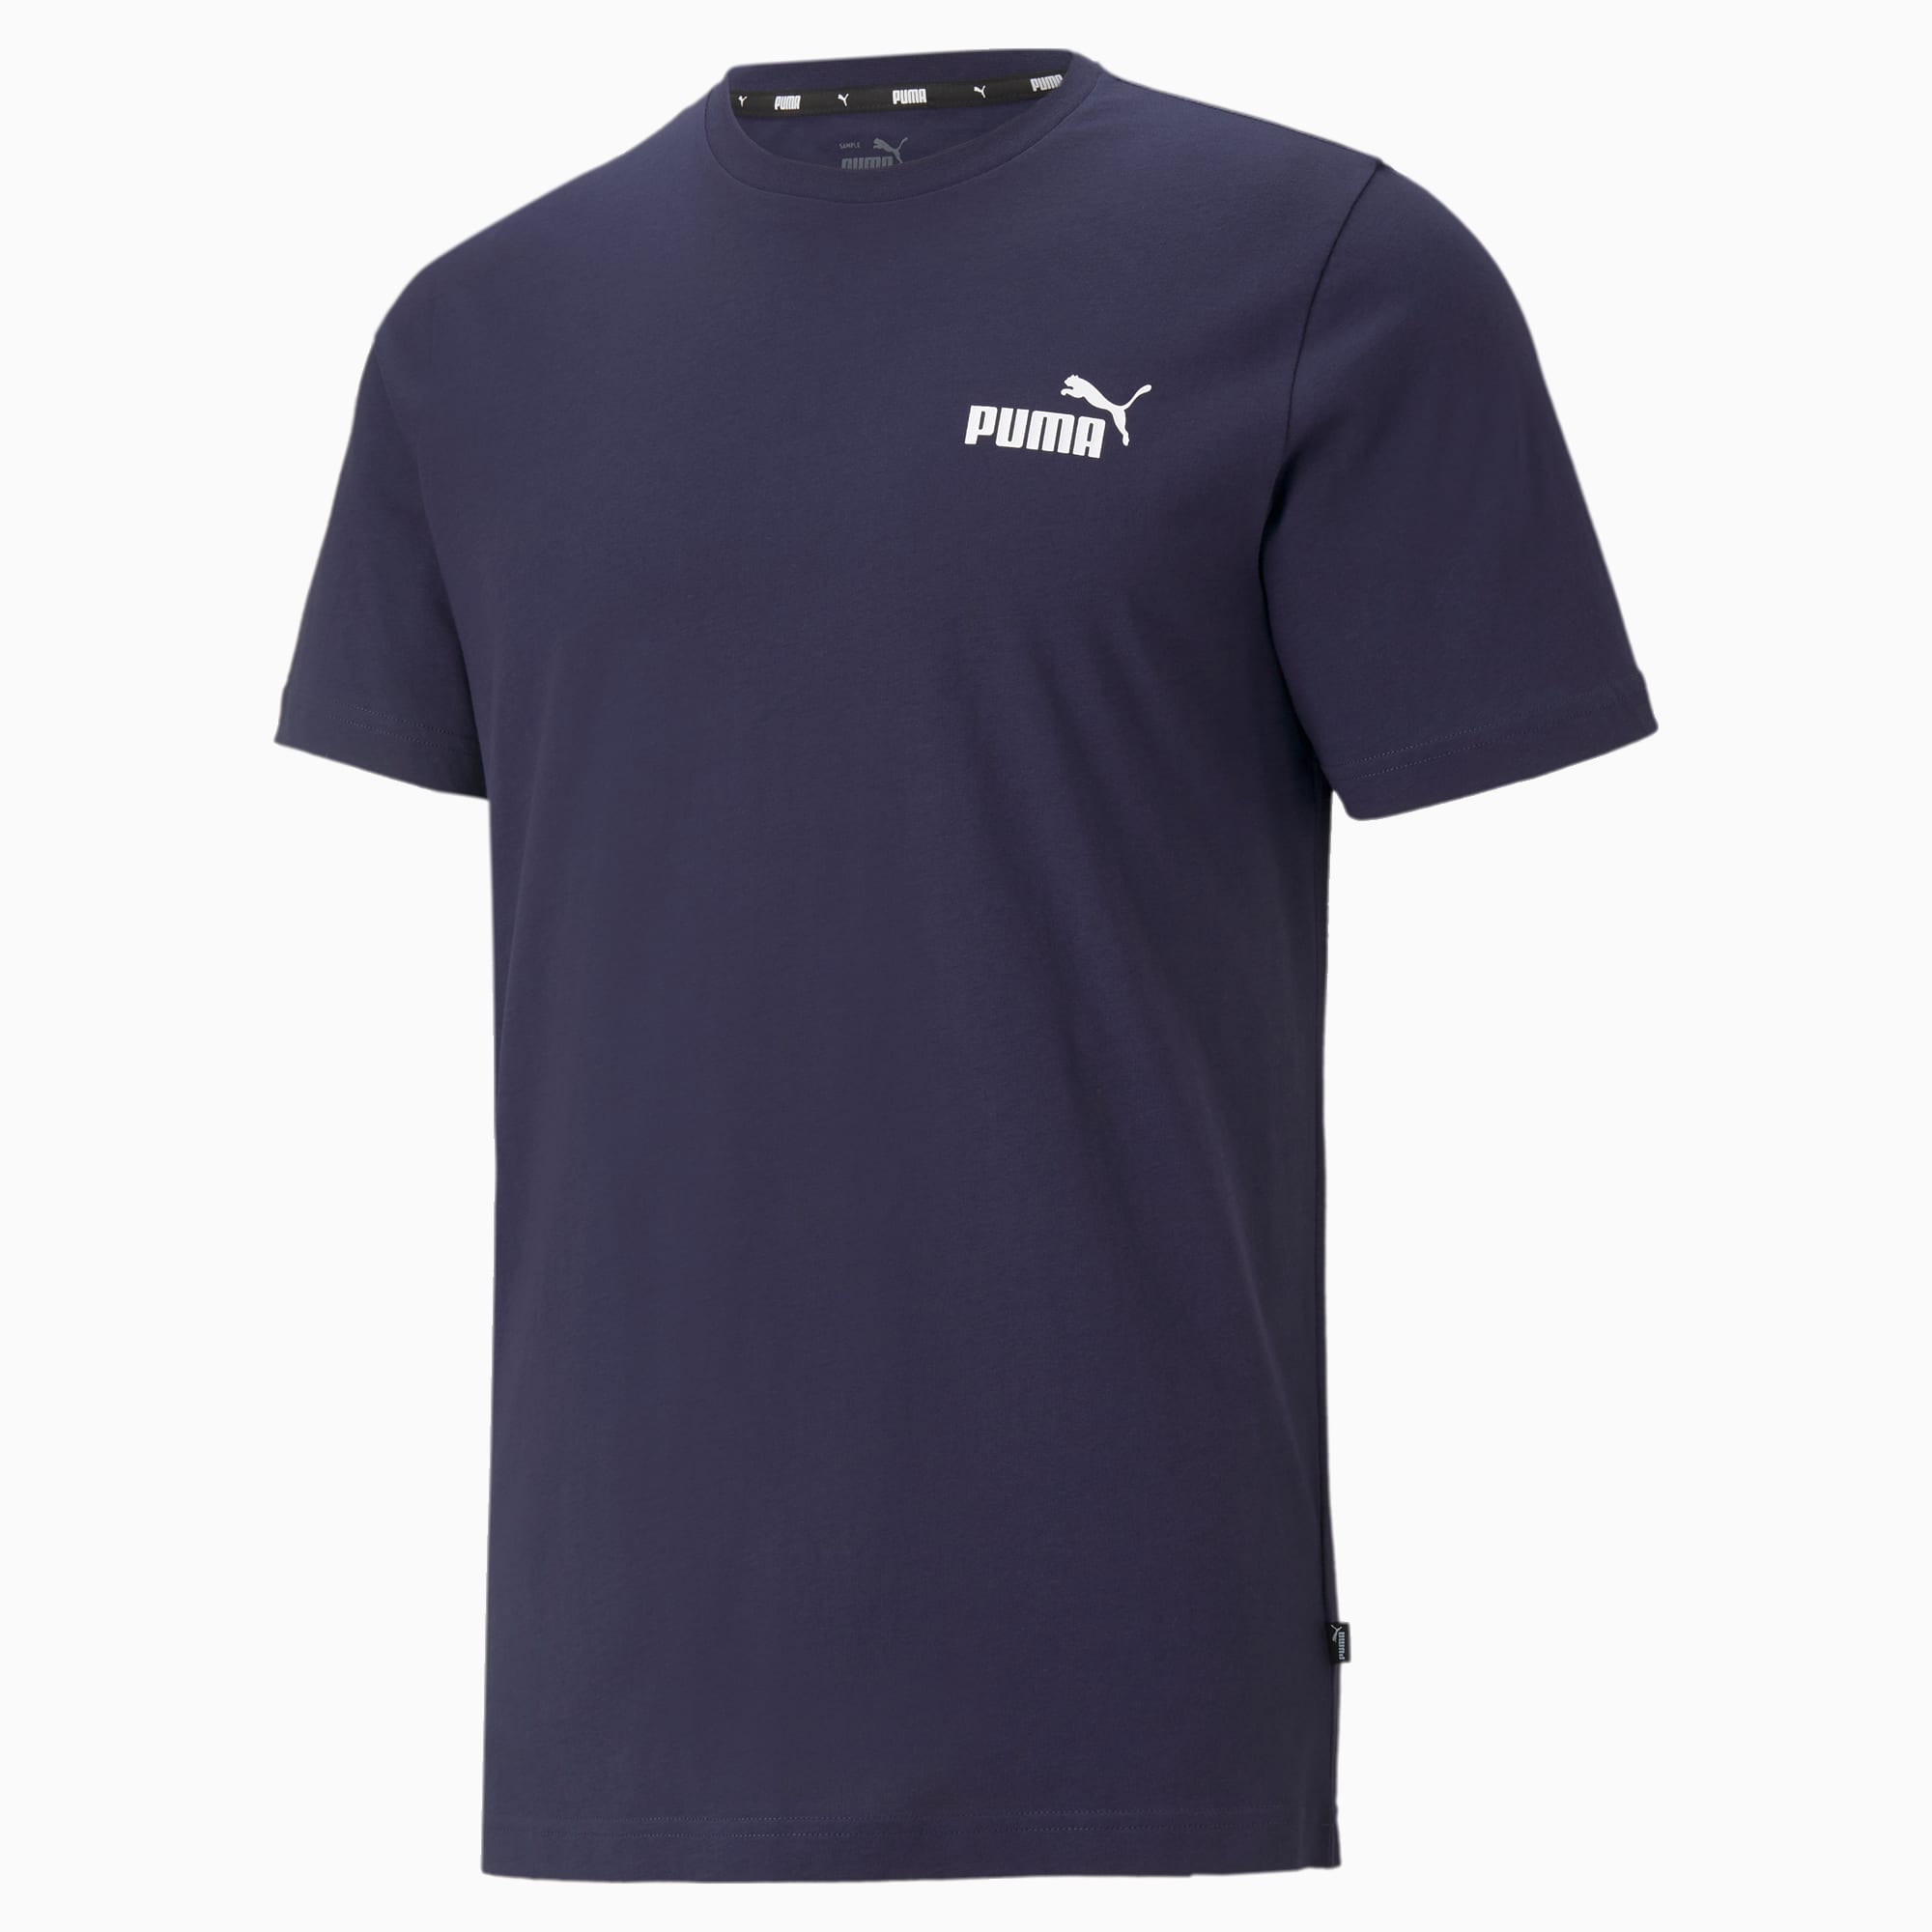 PUMA Essentials Small Logo T-Shirt Men, Peacoat, Size XS, Clothing